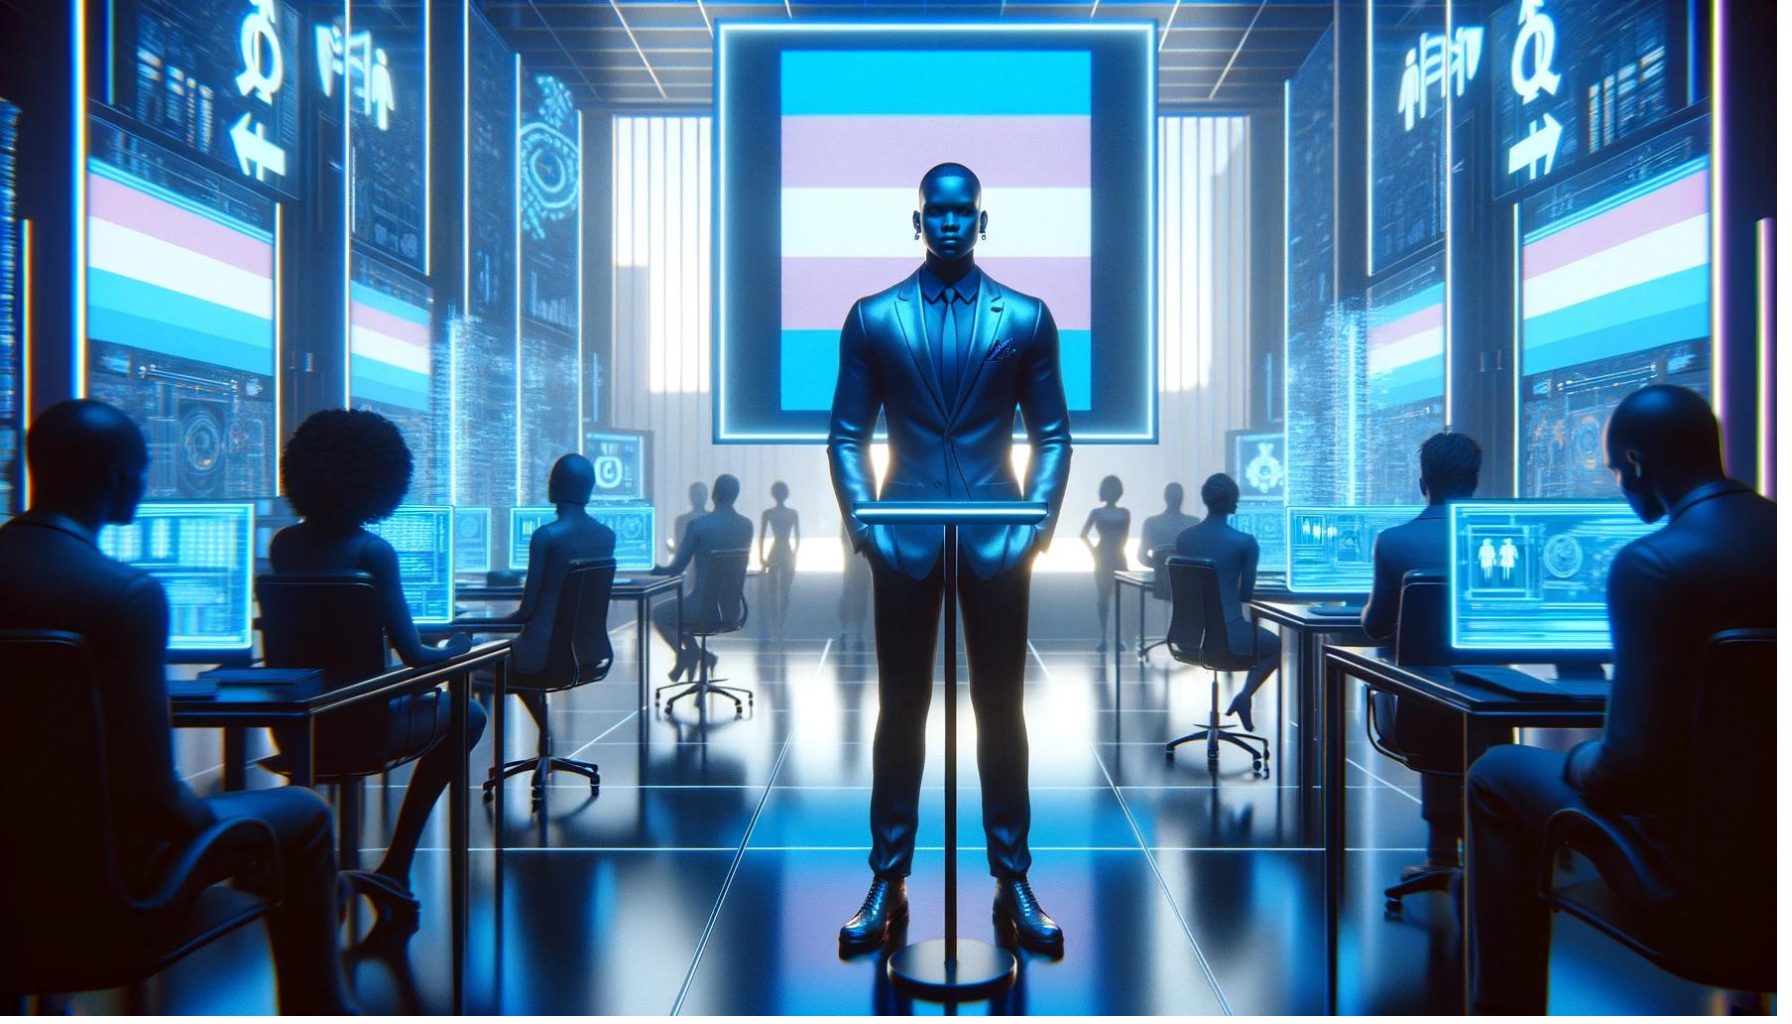 Um indivíduo de ascendência africana interage com uma exibição digital que apresenta a bandeira trans, em um escritório de RH futurista, destacando a importância da inclusão e visibilidade trans no ambiente corporativo.